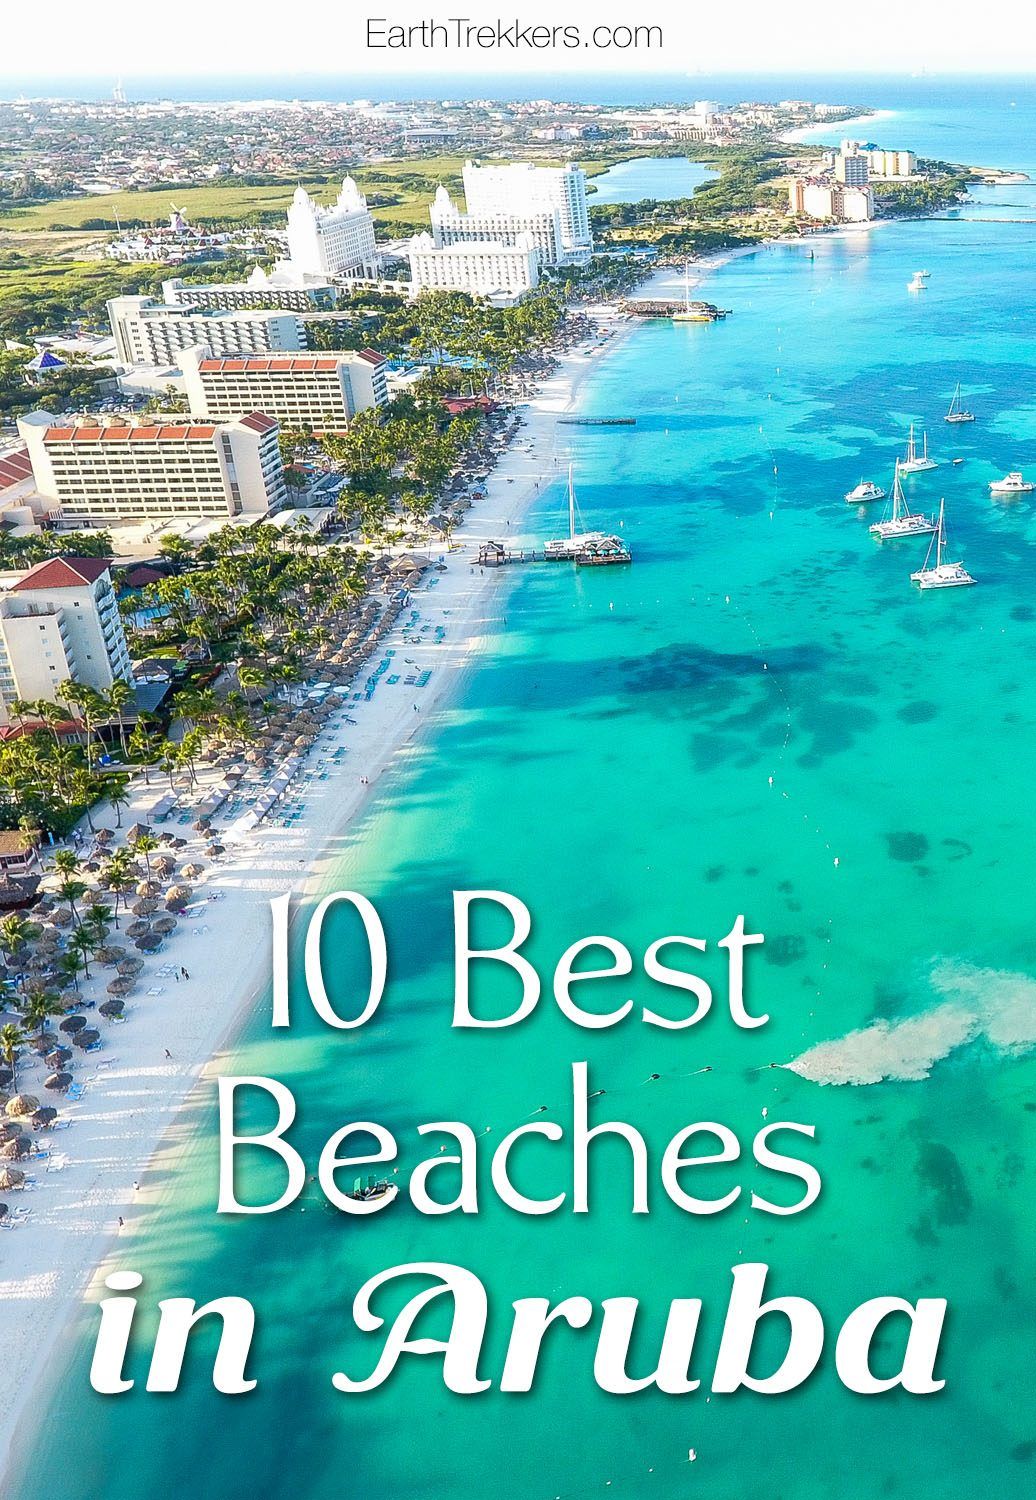 Ten Best Beaches in Aruba